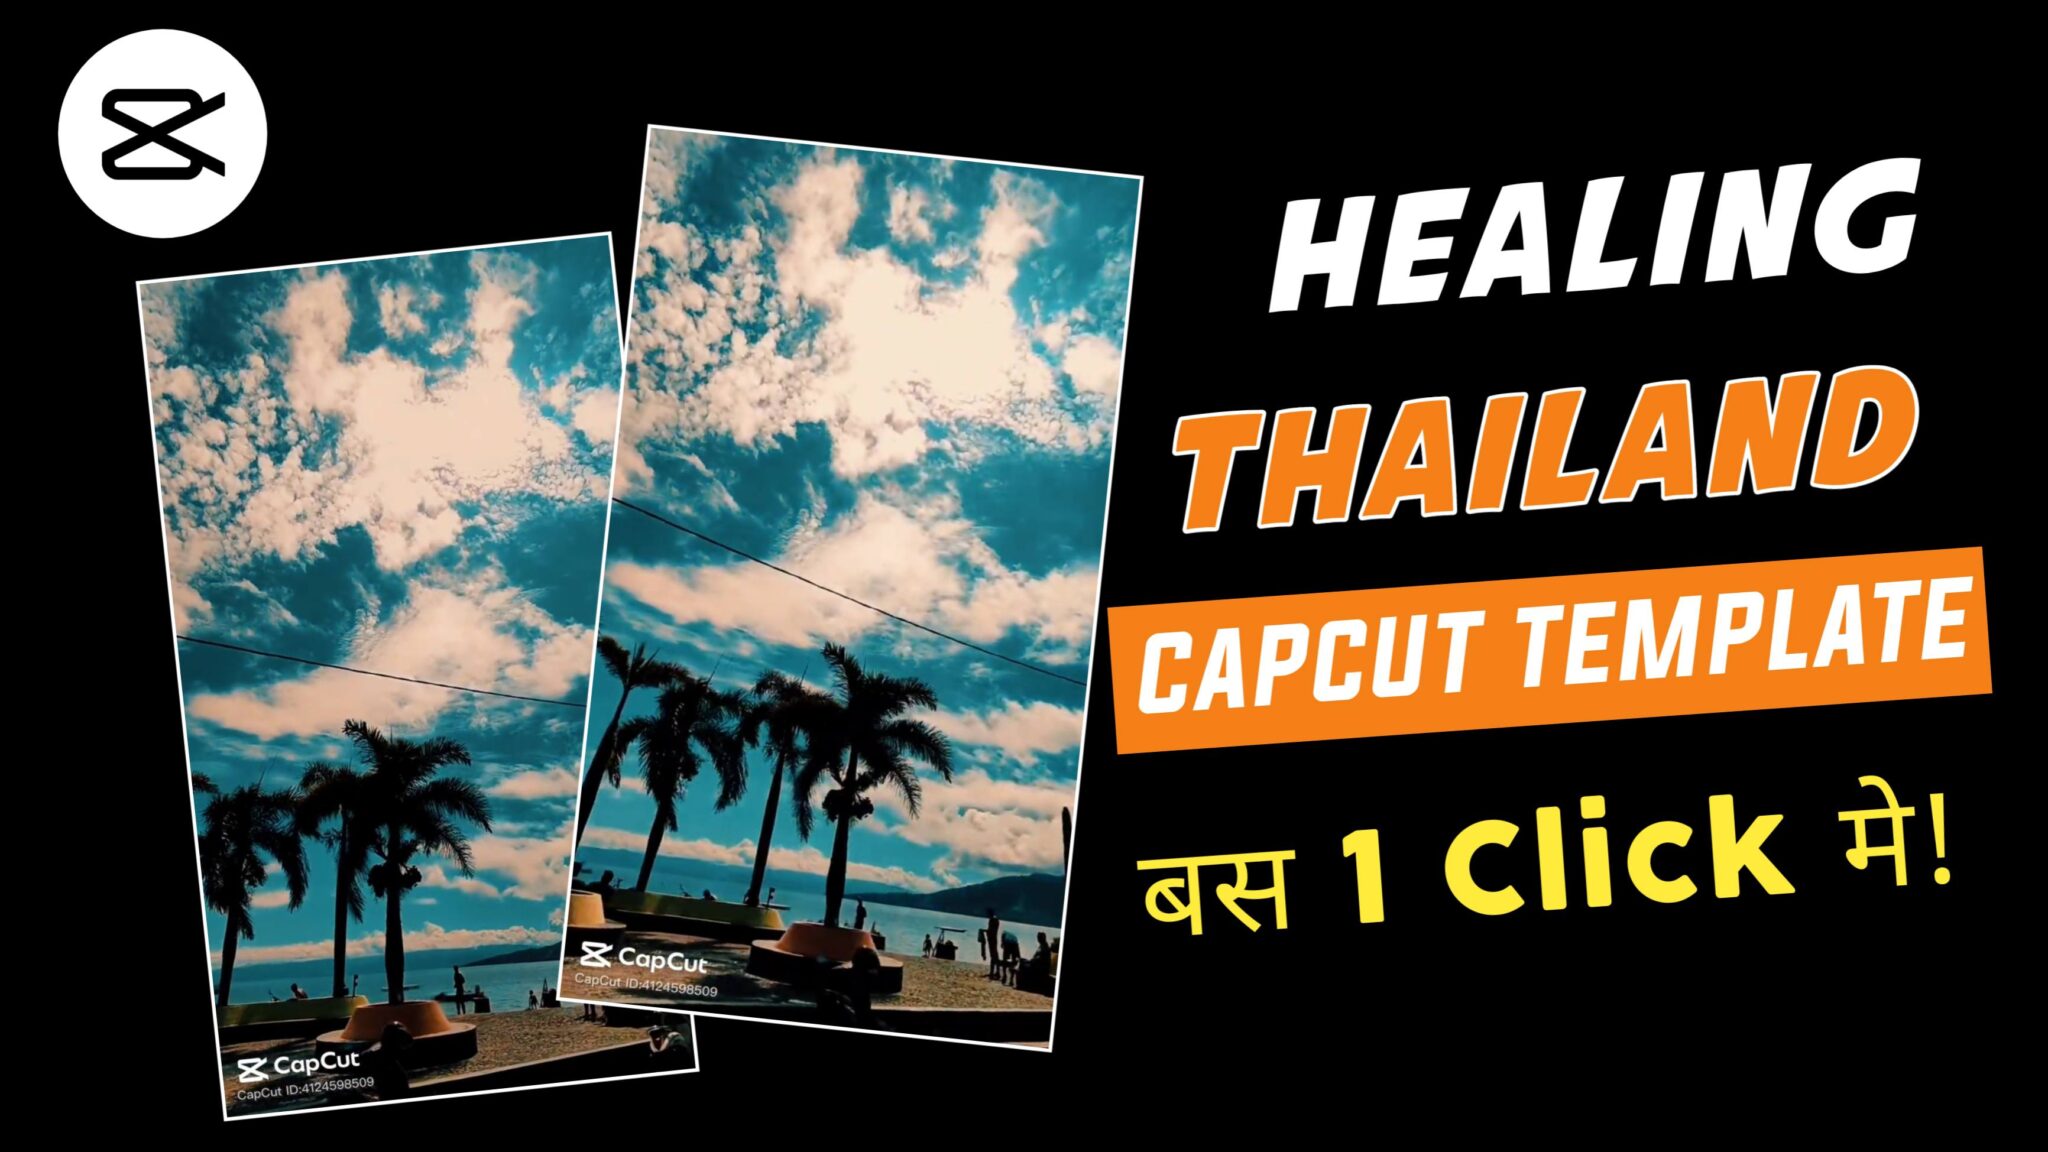 Healing Thailand Capcut Template Healing Thailand Capcut Template Link 2023 